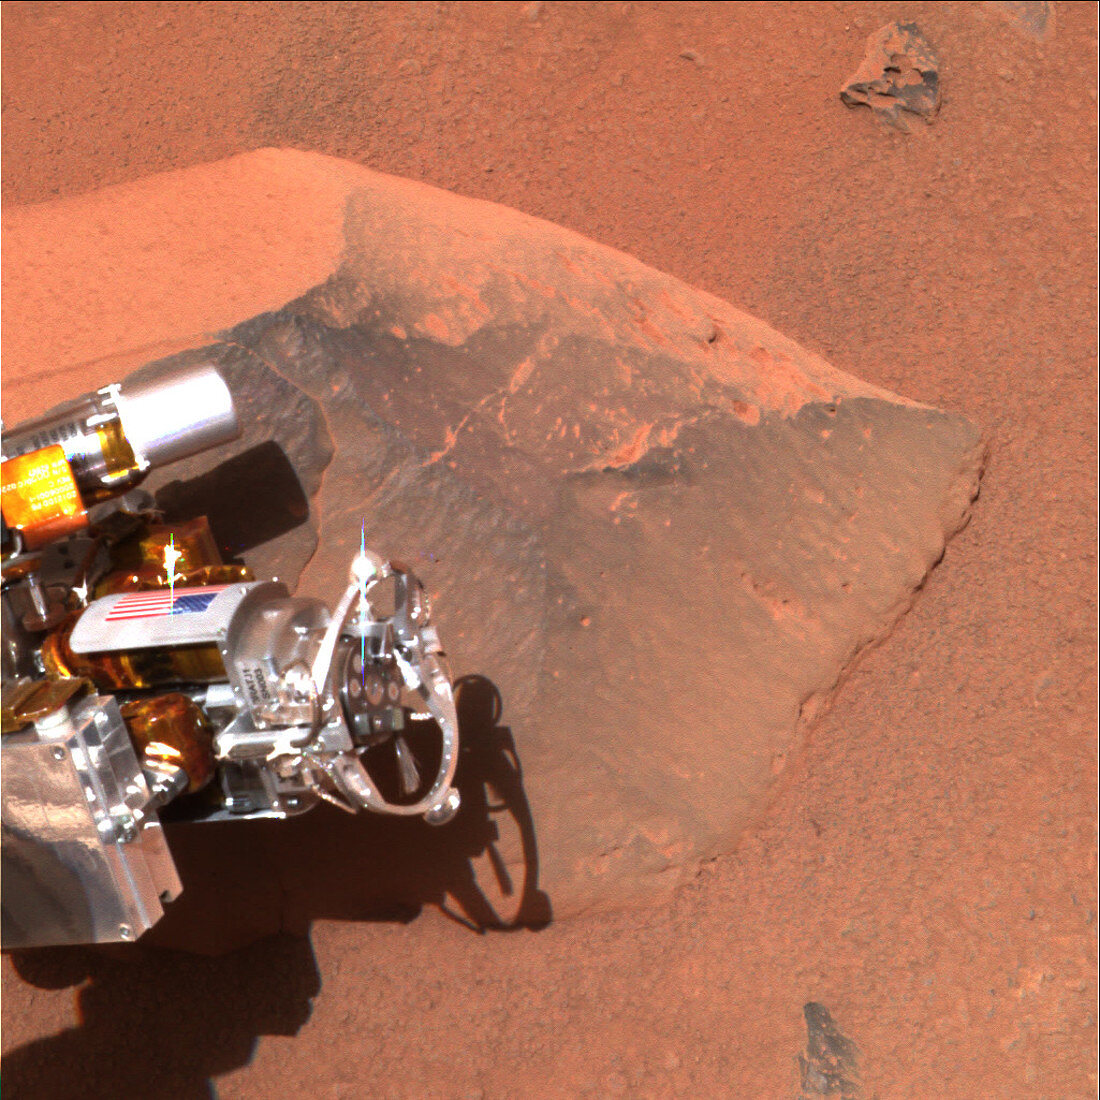 Rock analysis on Mars